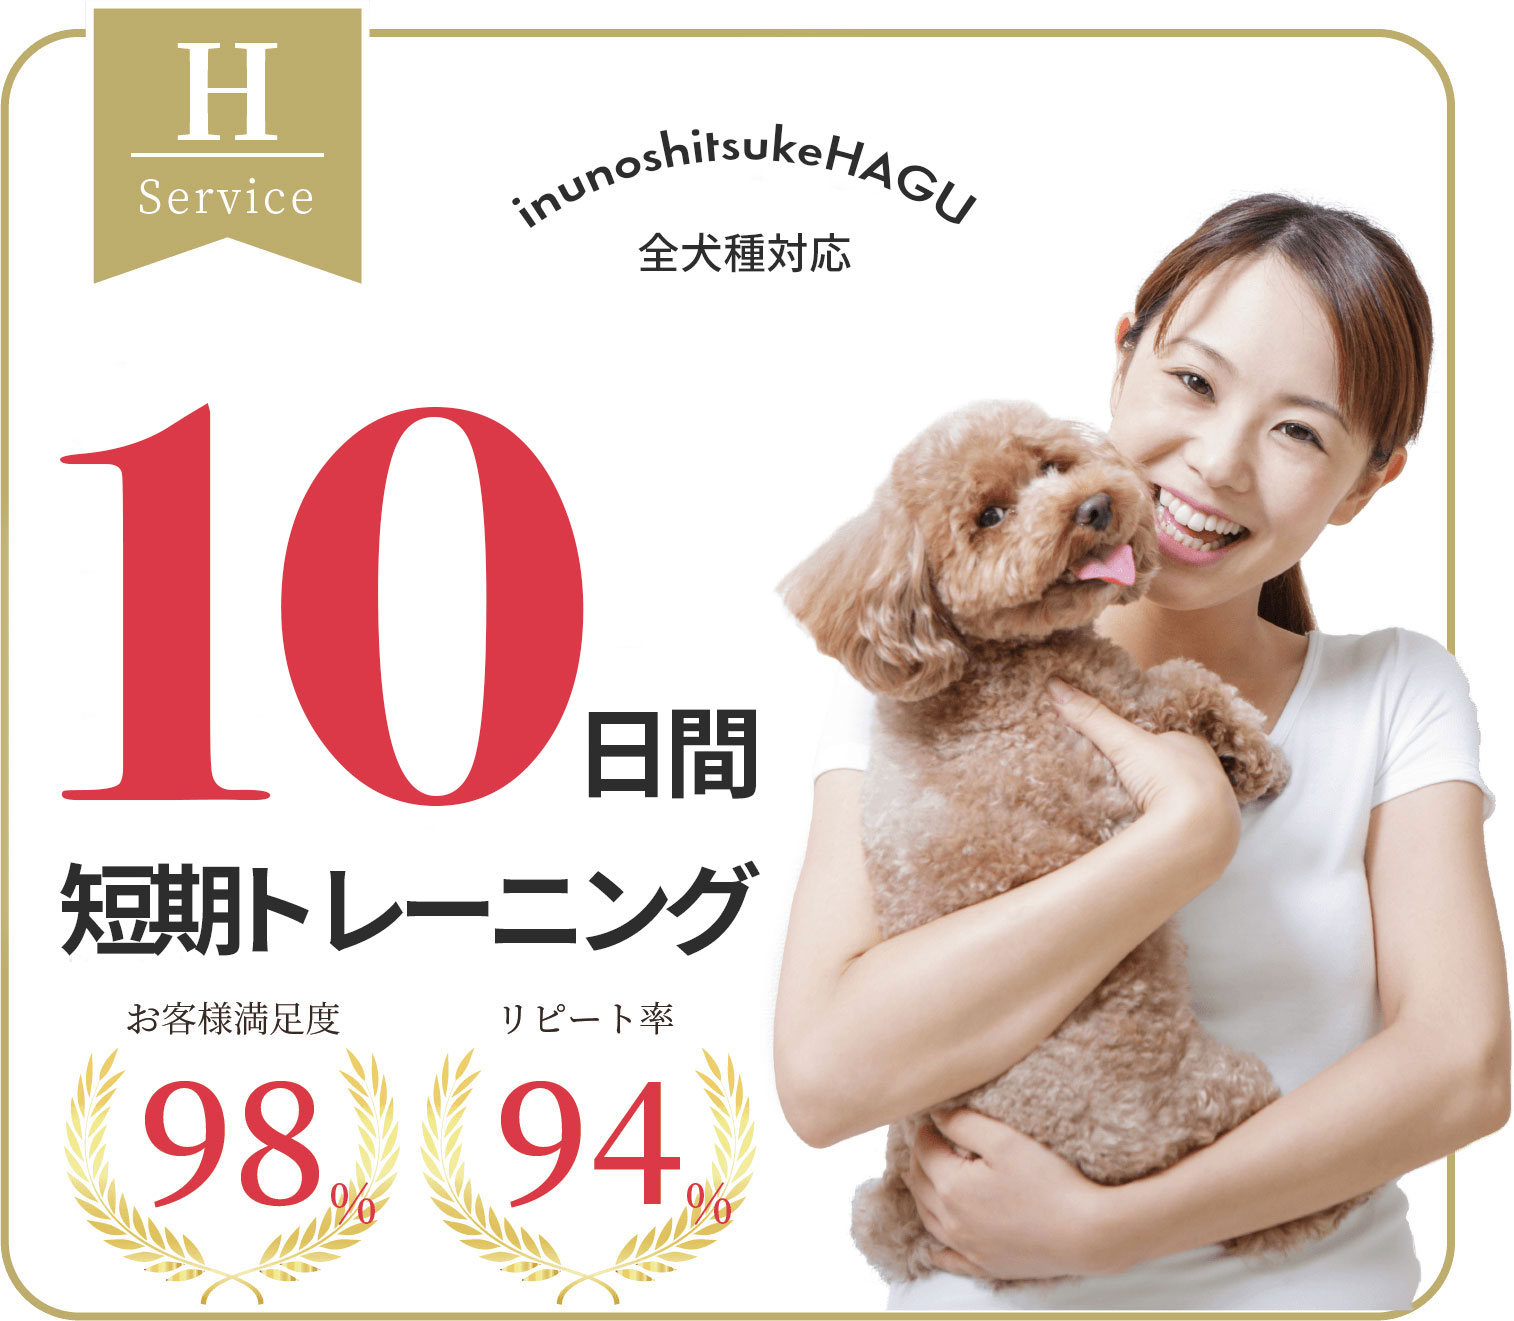 吠え、噛む癖、トイレトレーニングは世田谷と文京区にある犬のしつけハグのドッグホテル1000円